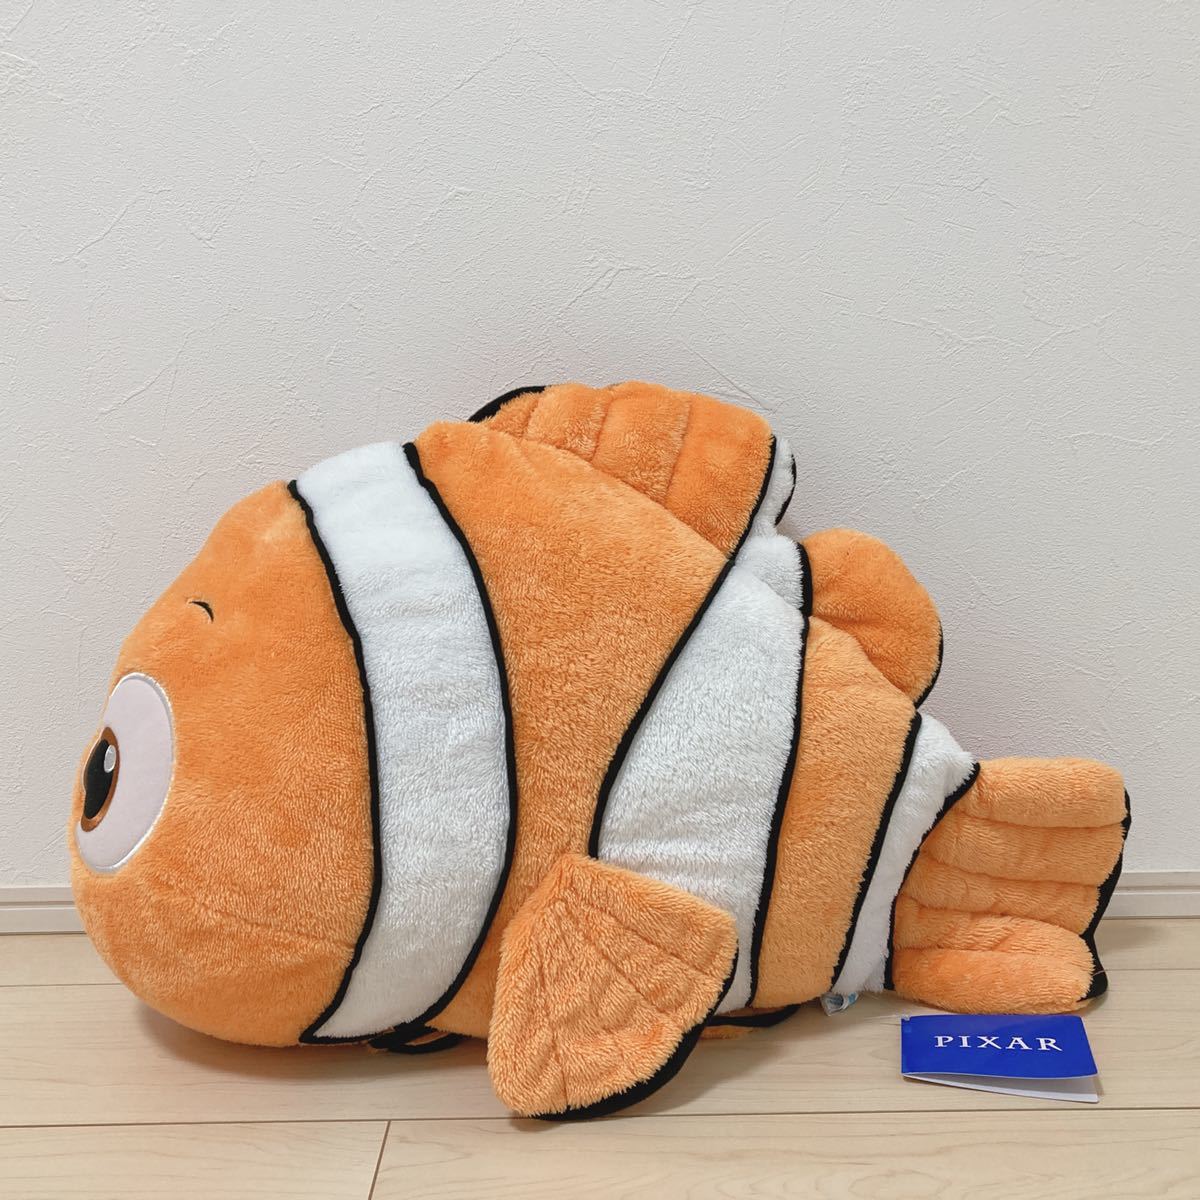  не продается приз nimo Giga jumbo нежный мягкая игрушка Finding Nemo интерьер piksa- медведь блохи Disney Disney